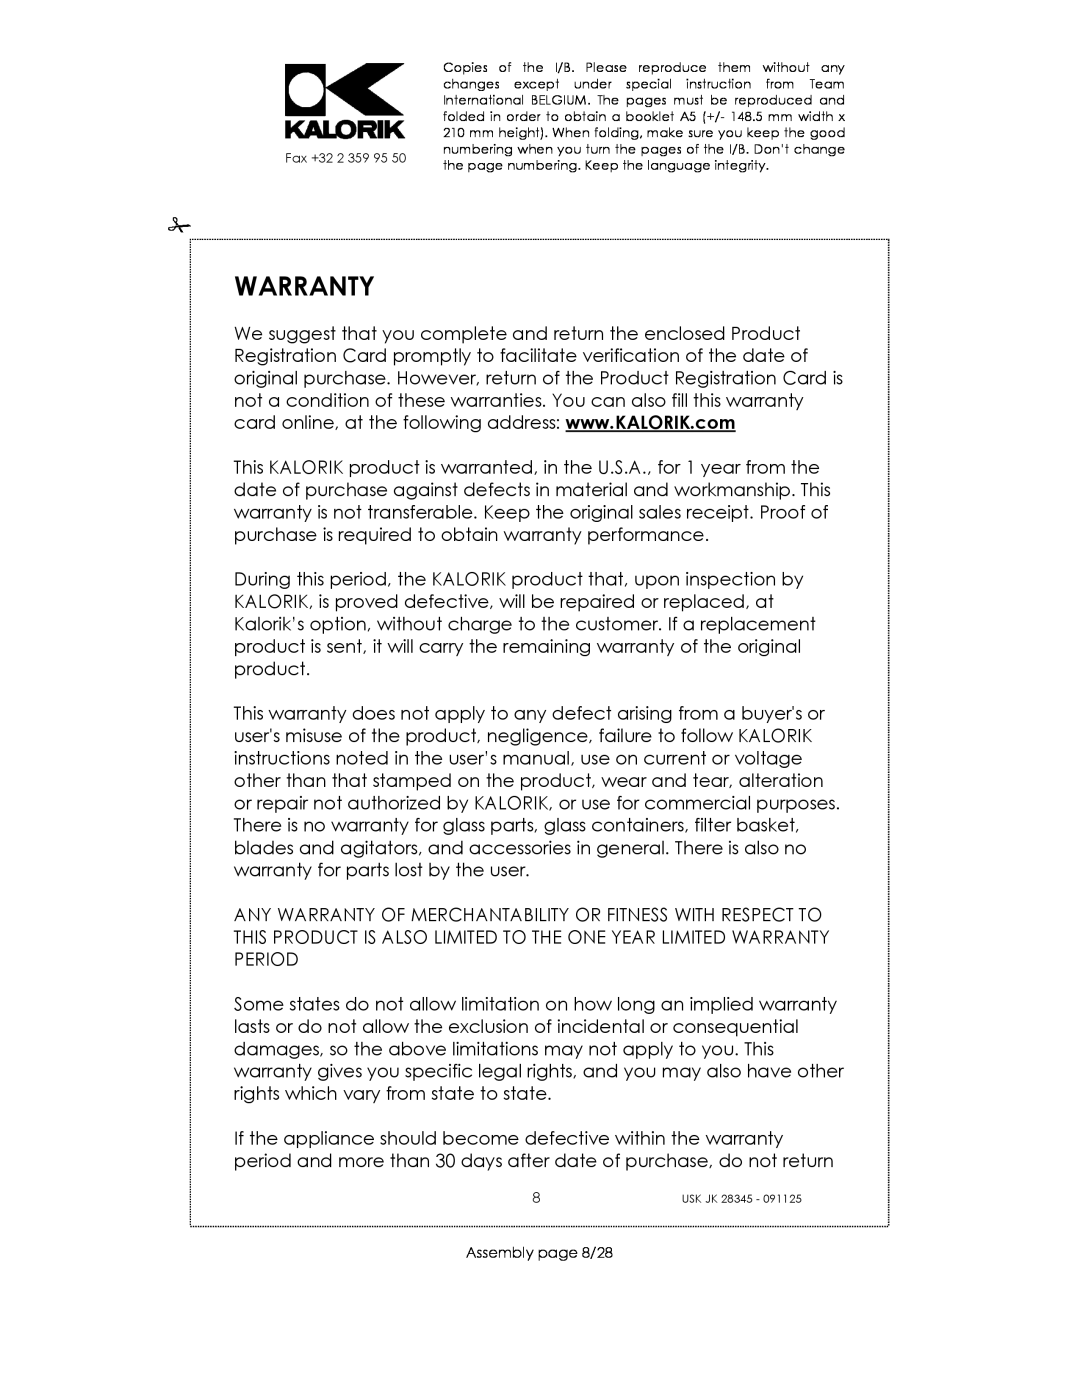 Kalorik USK JK 28345 manual Warranty, Assembly page 8/28 